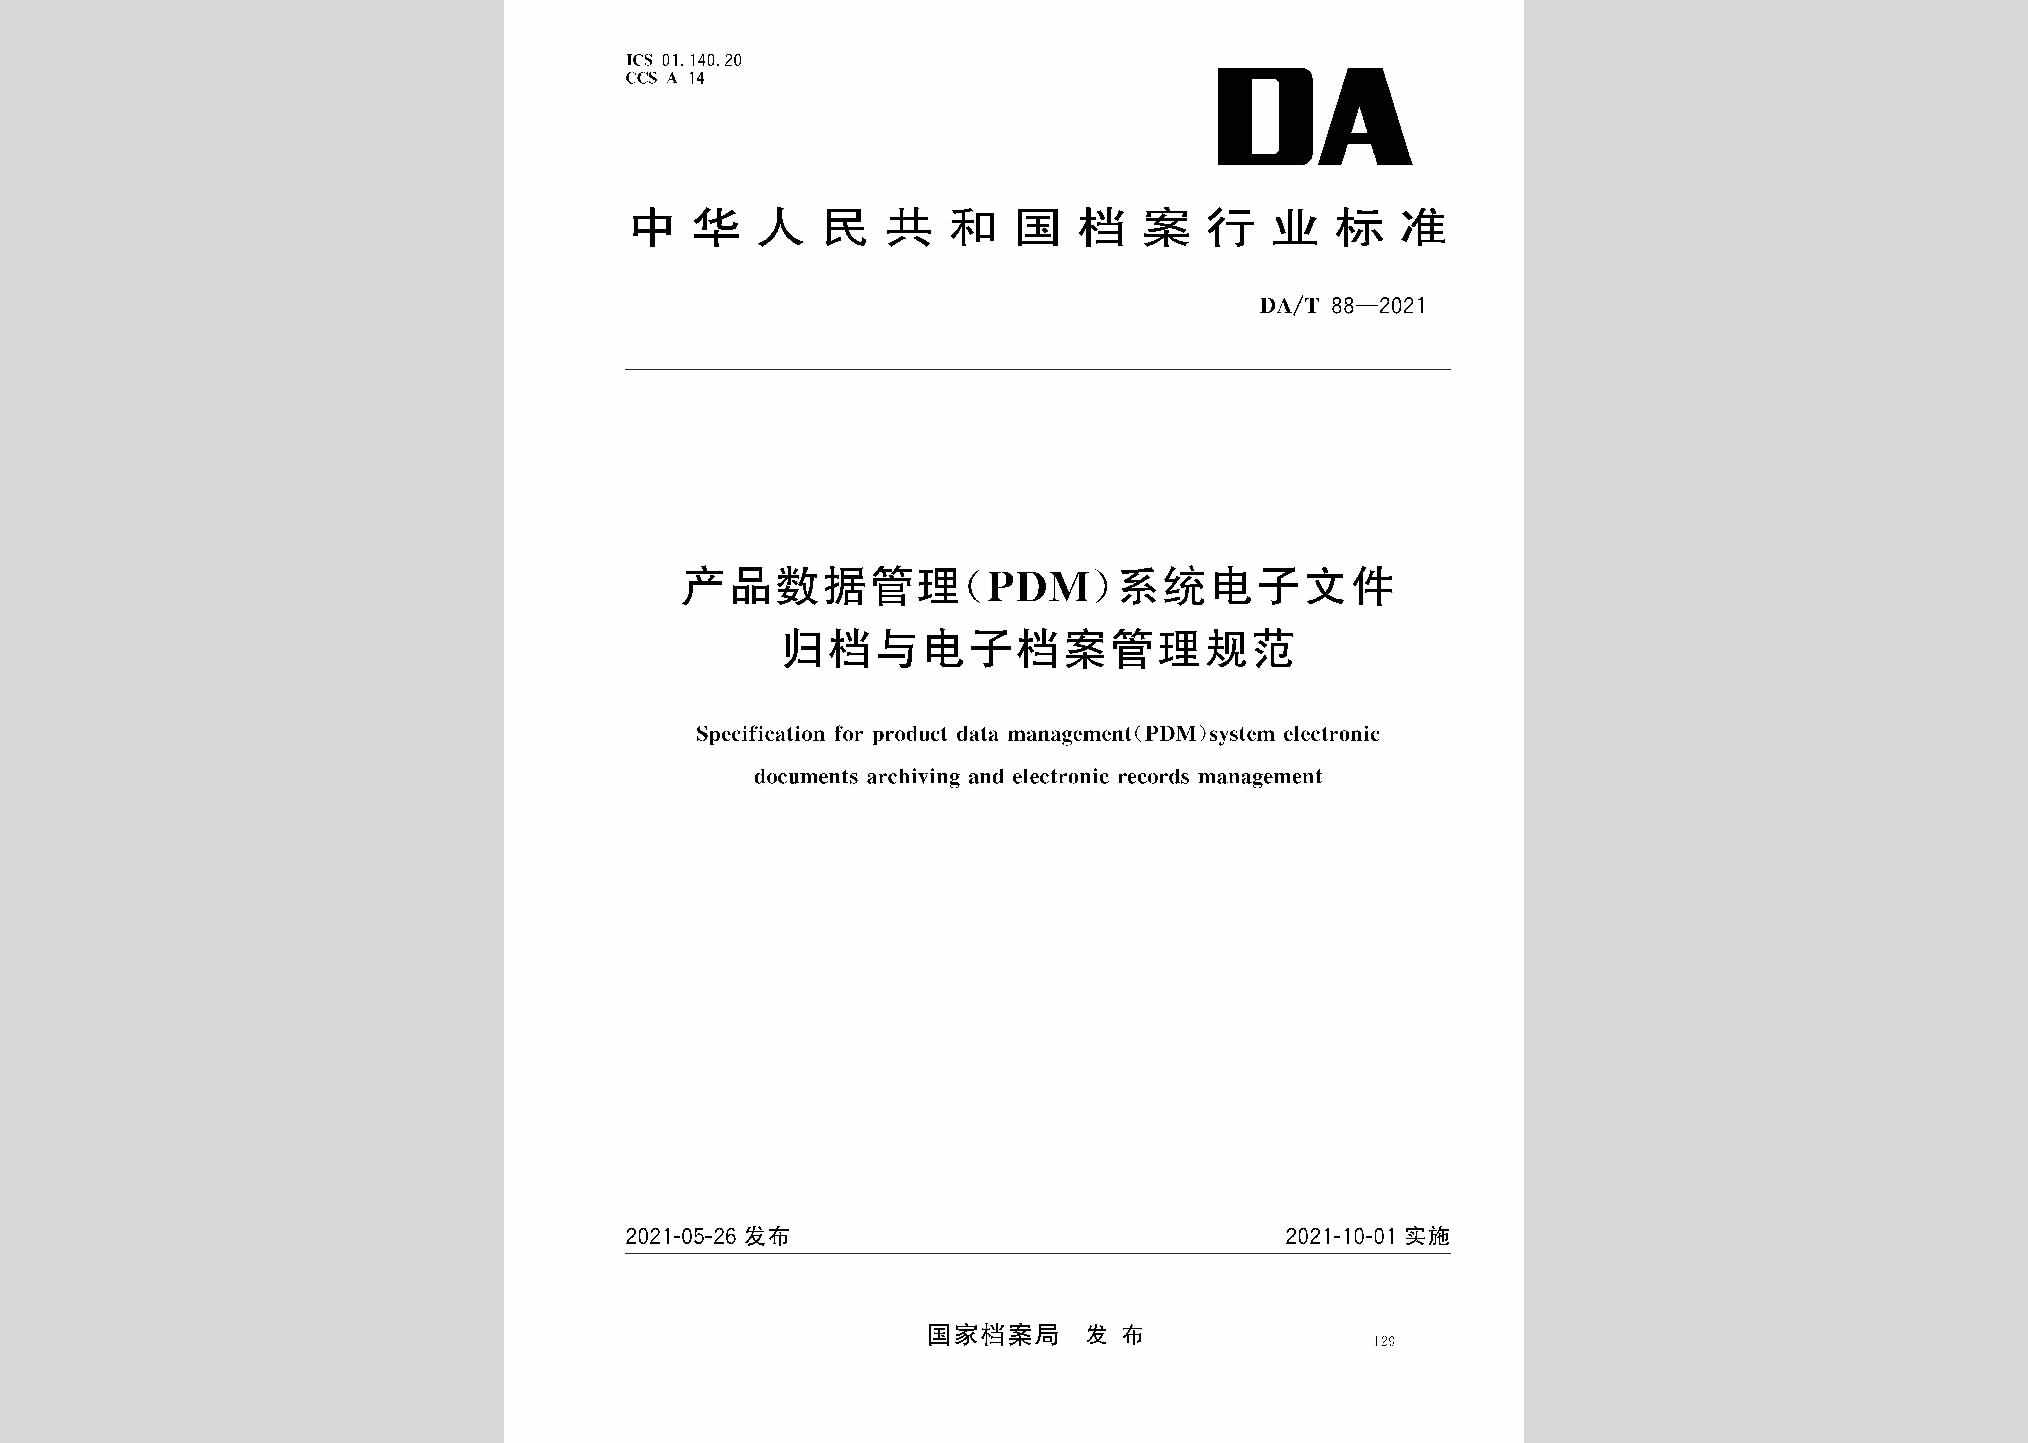 DA/T88-2021：产品数据管理（PDM）系统电子文件归档与电子档案管理规范